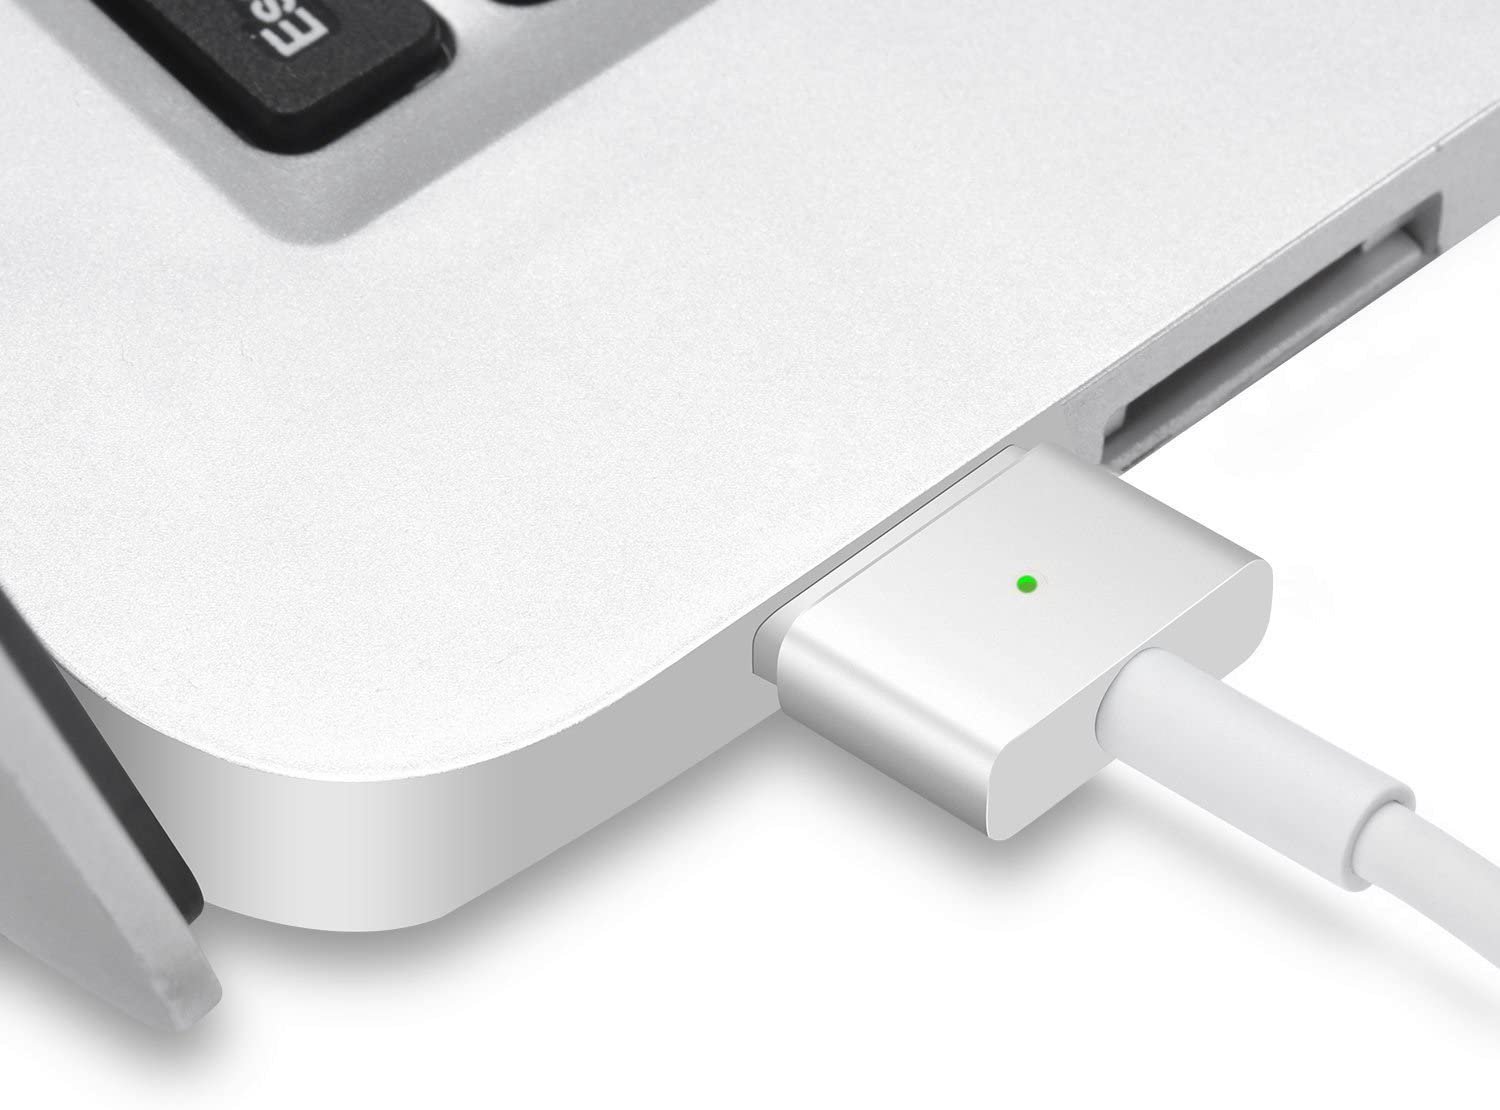 Cargador Macbook - Adaptador de corriente Magsafe 2 de 45W para MacBook Air 2012 - 2017